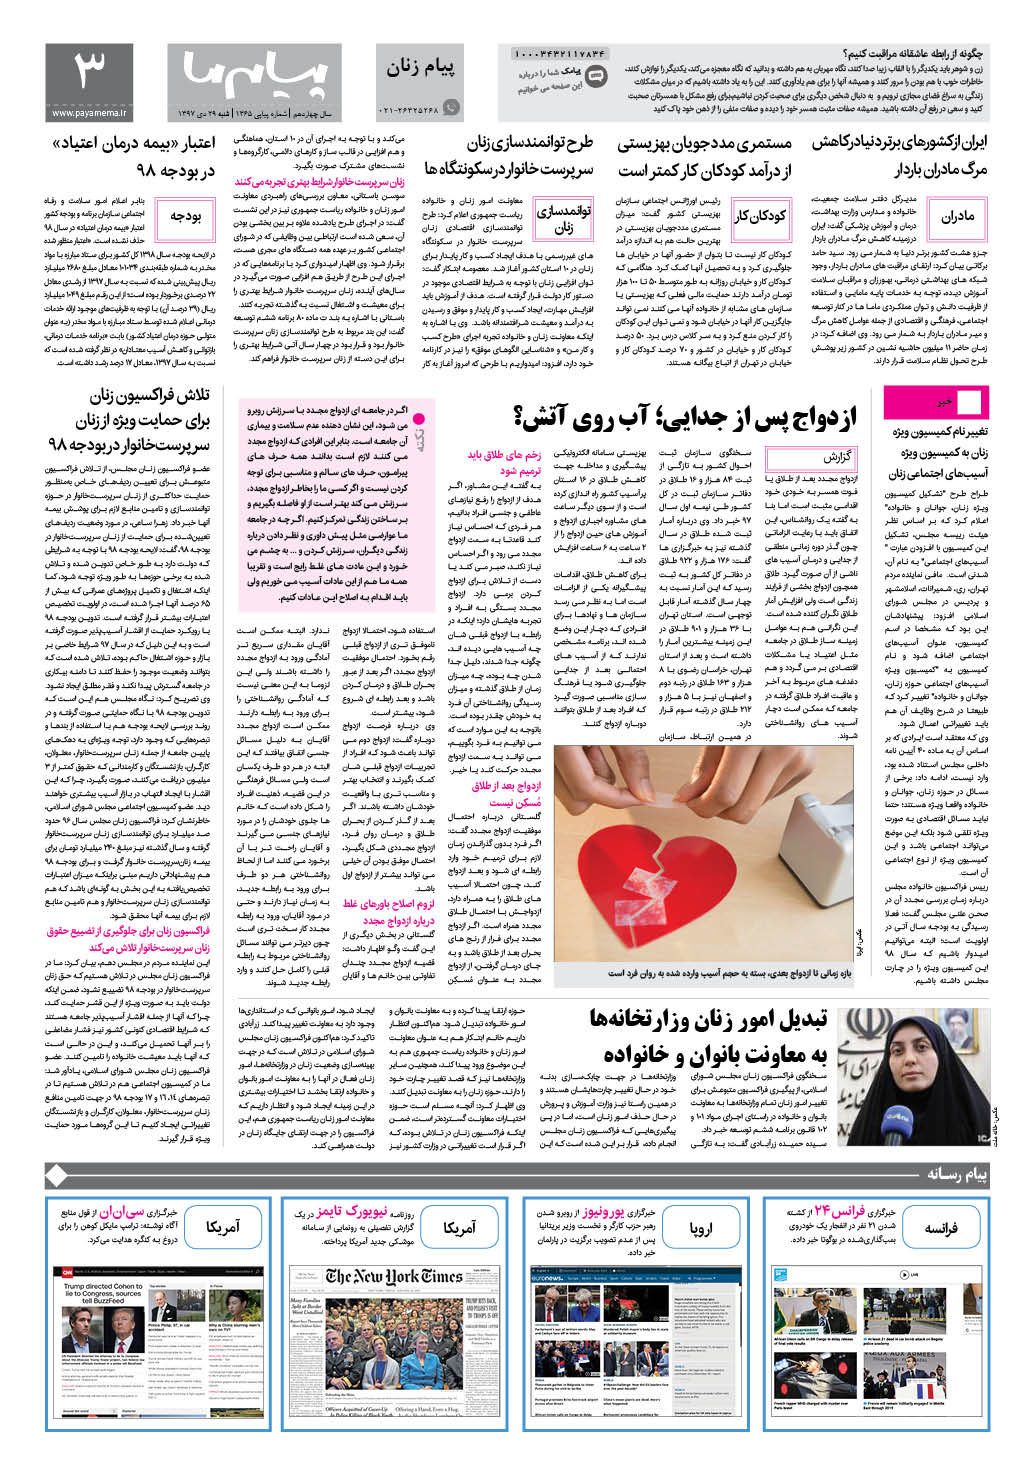 صفحه پیام زنان شماره 1365 روزنامه پیام ما